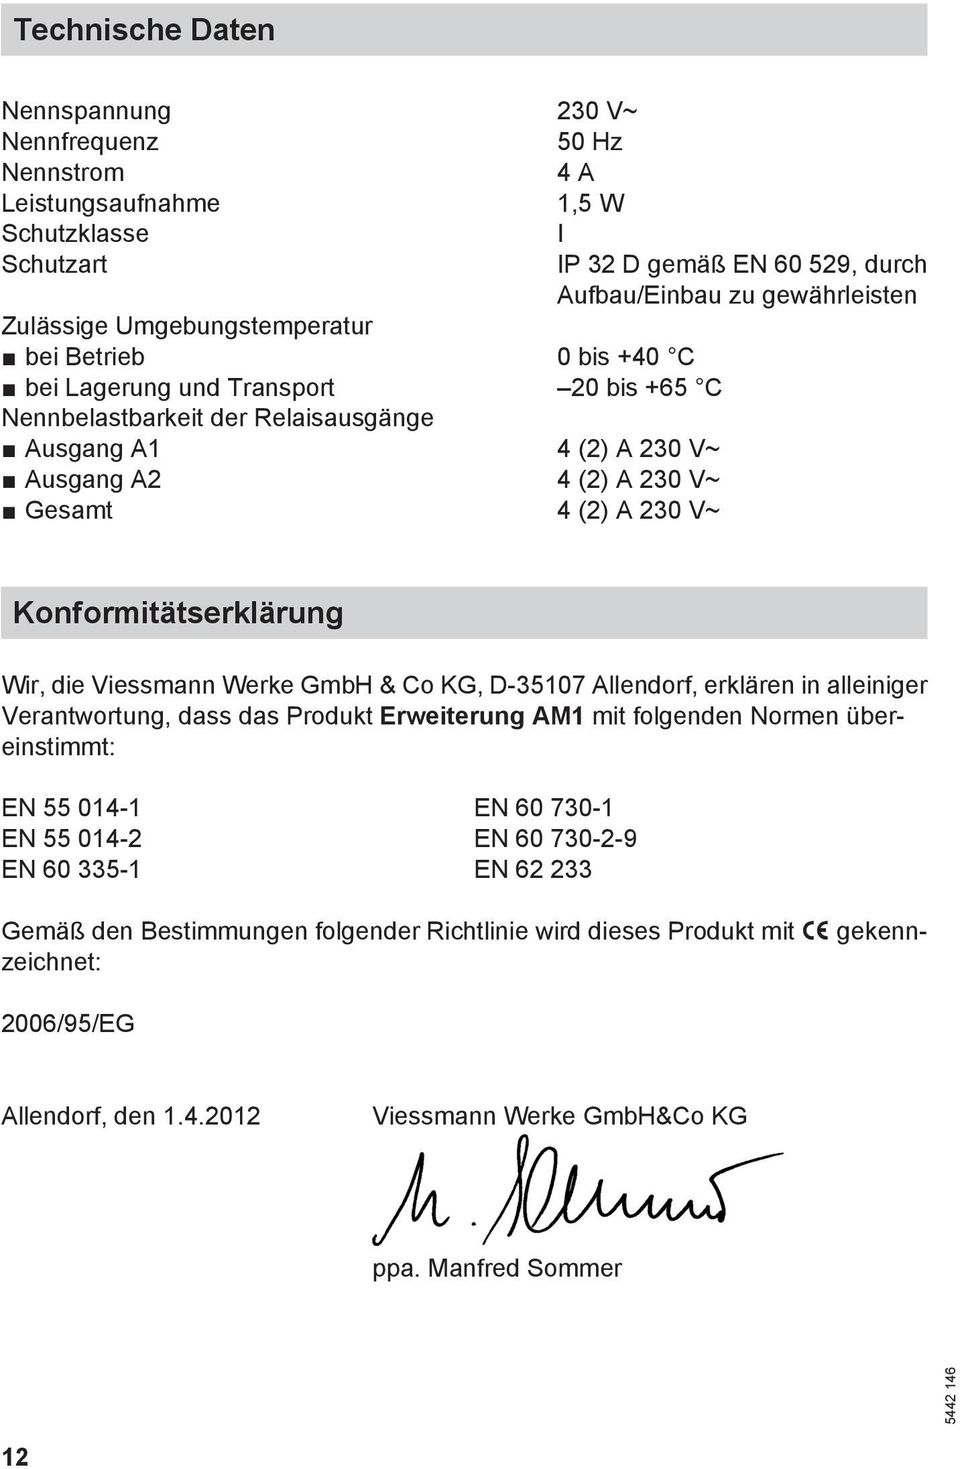 Konformitätserklärung Wir, die Viessmann Werke GmbH & Co KG, D-35107 Allendorf, erklären in alleiniger Verantwortung, dass das Produkt Erweiterung AM1 mit folgenden Normen übereinstimmt: EN 55 014-1